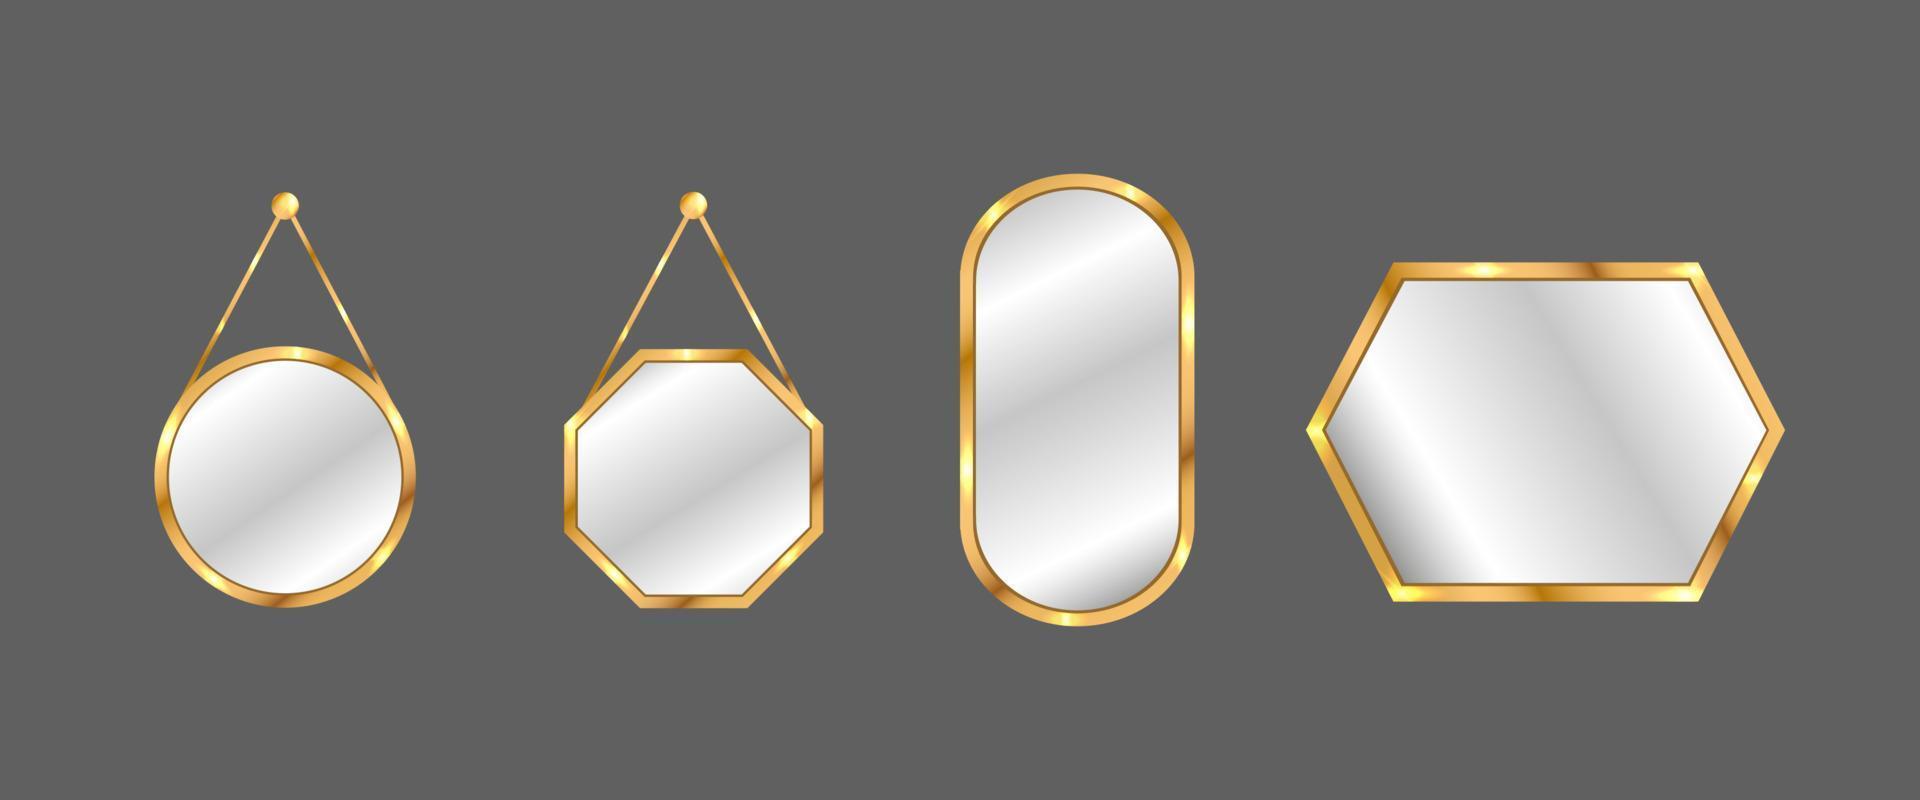 hängende Spiegel eingestellt. Kreis- und Quadratspiegel mit goldenem Rahmen. vektor